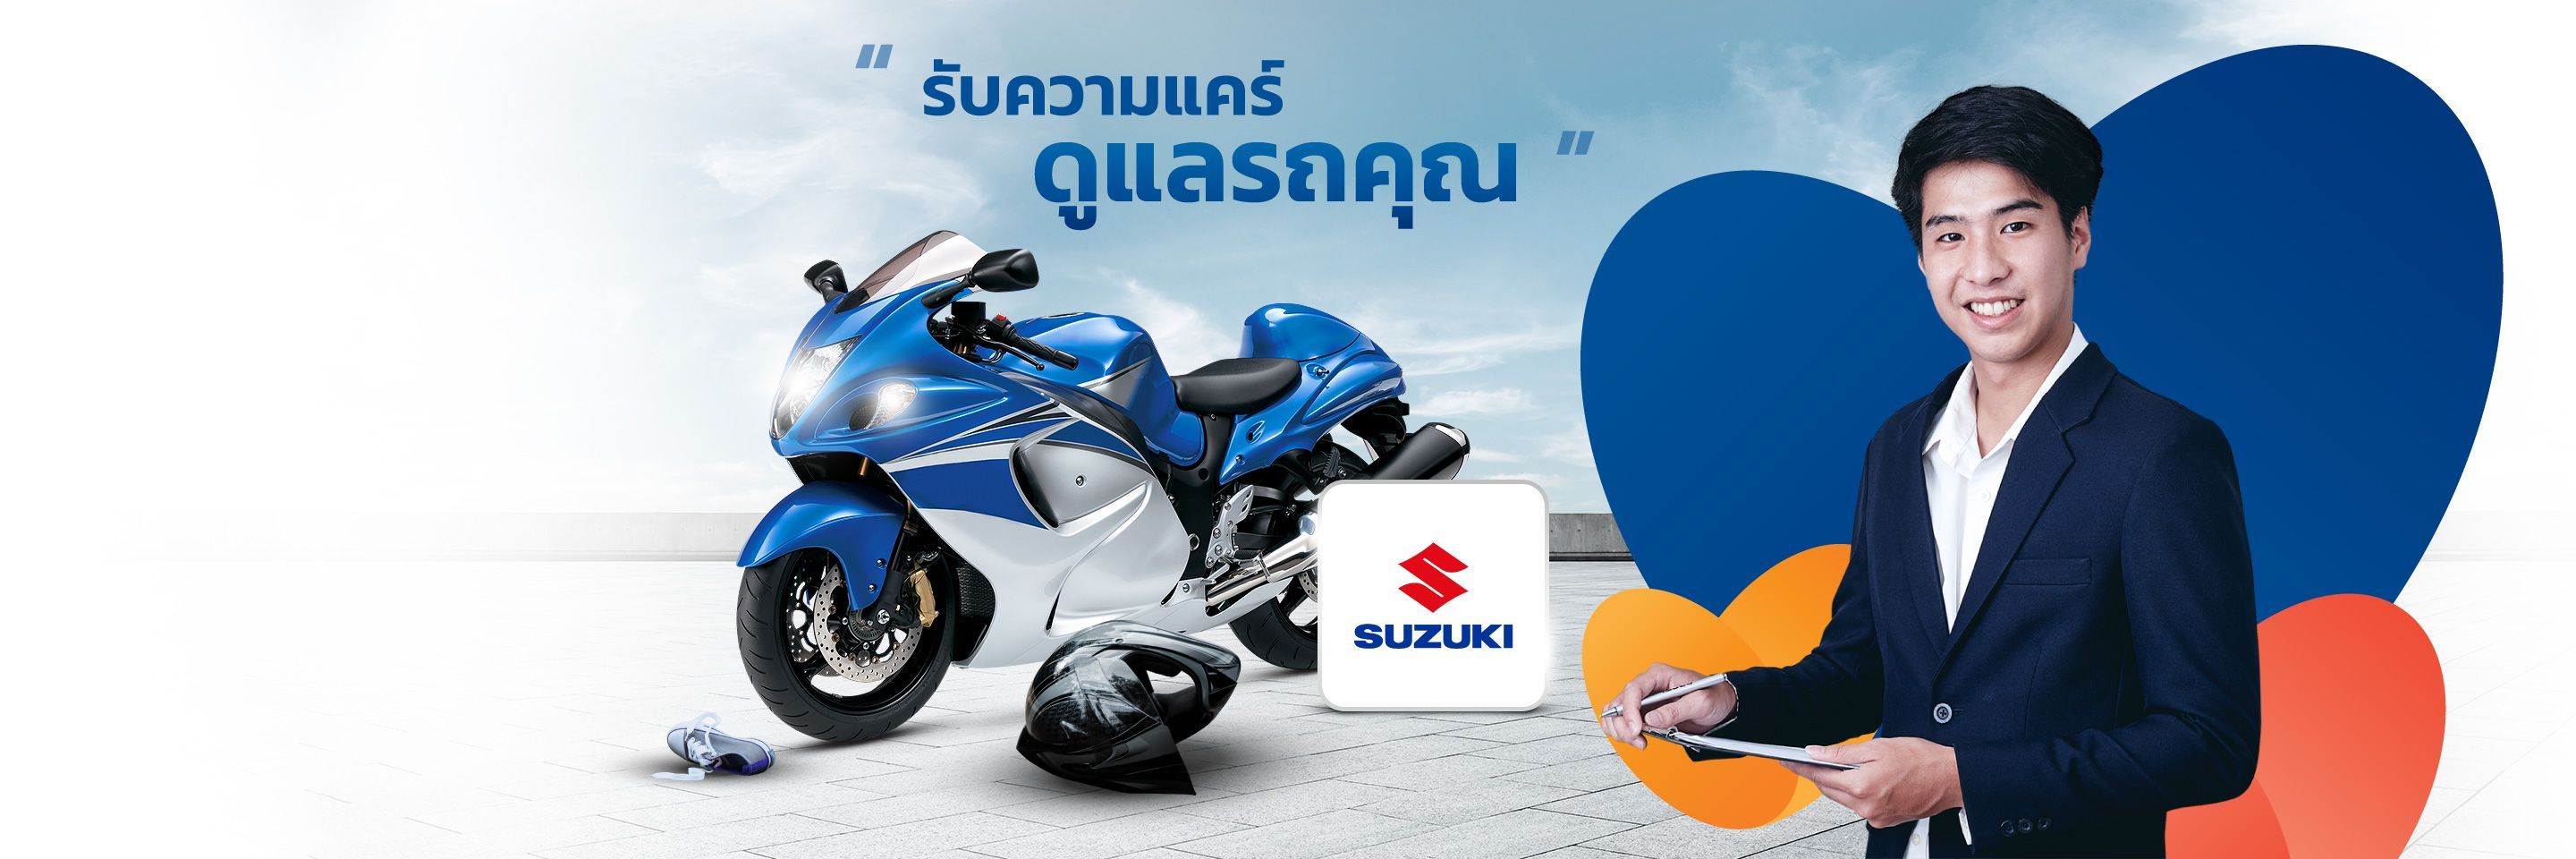 Motorbike Brand_Slider_Top banner Suzuki.jpg